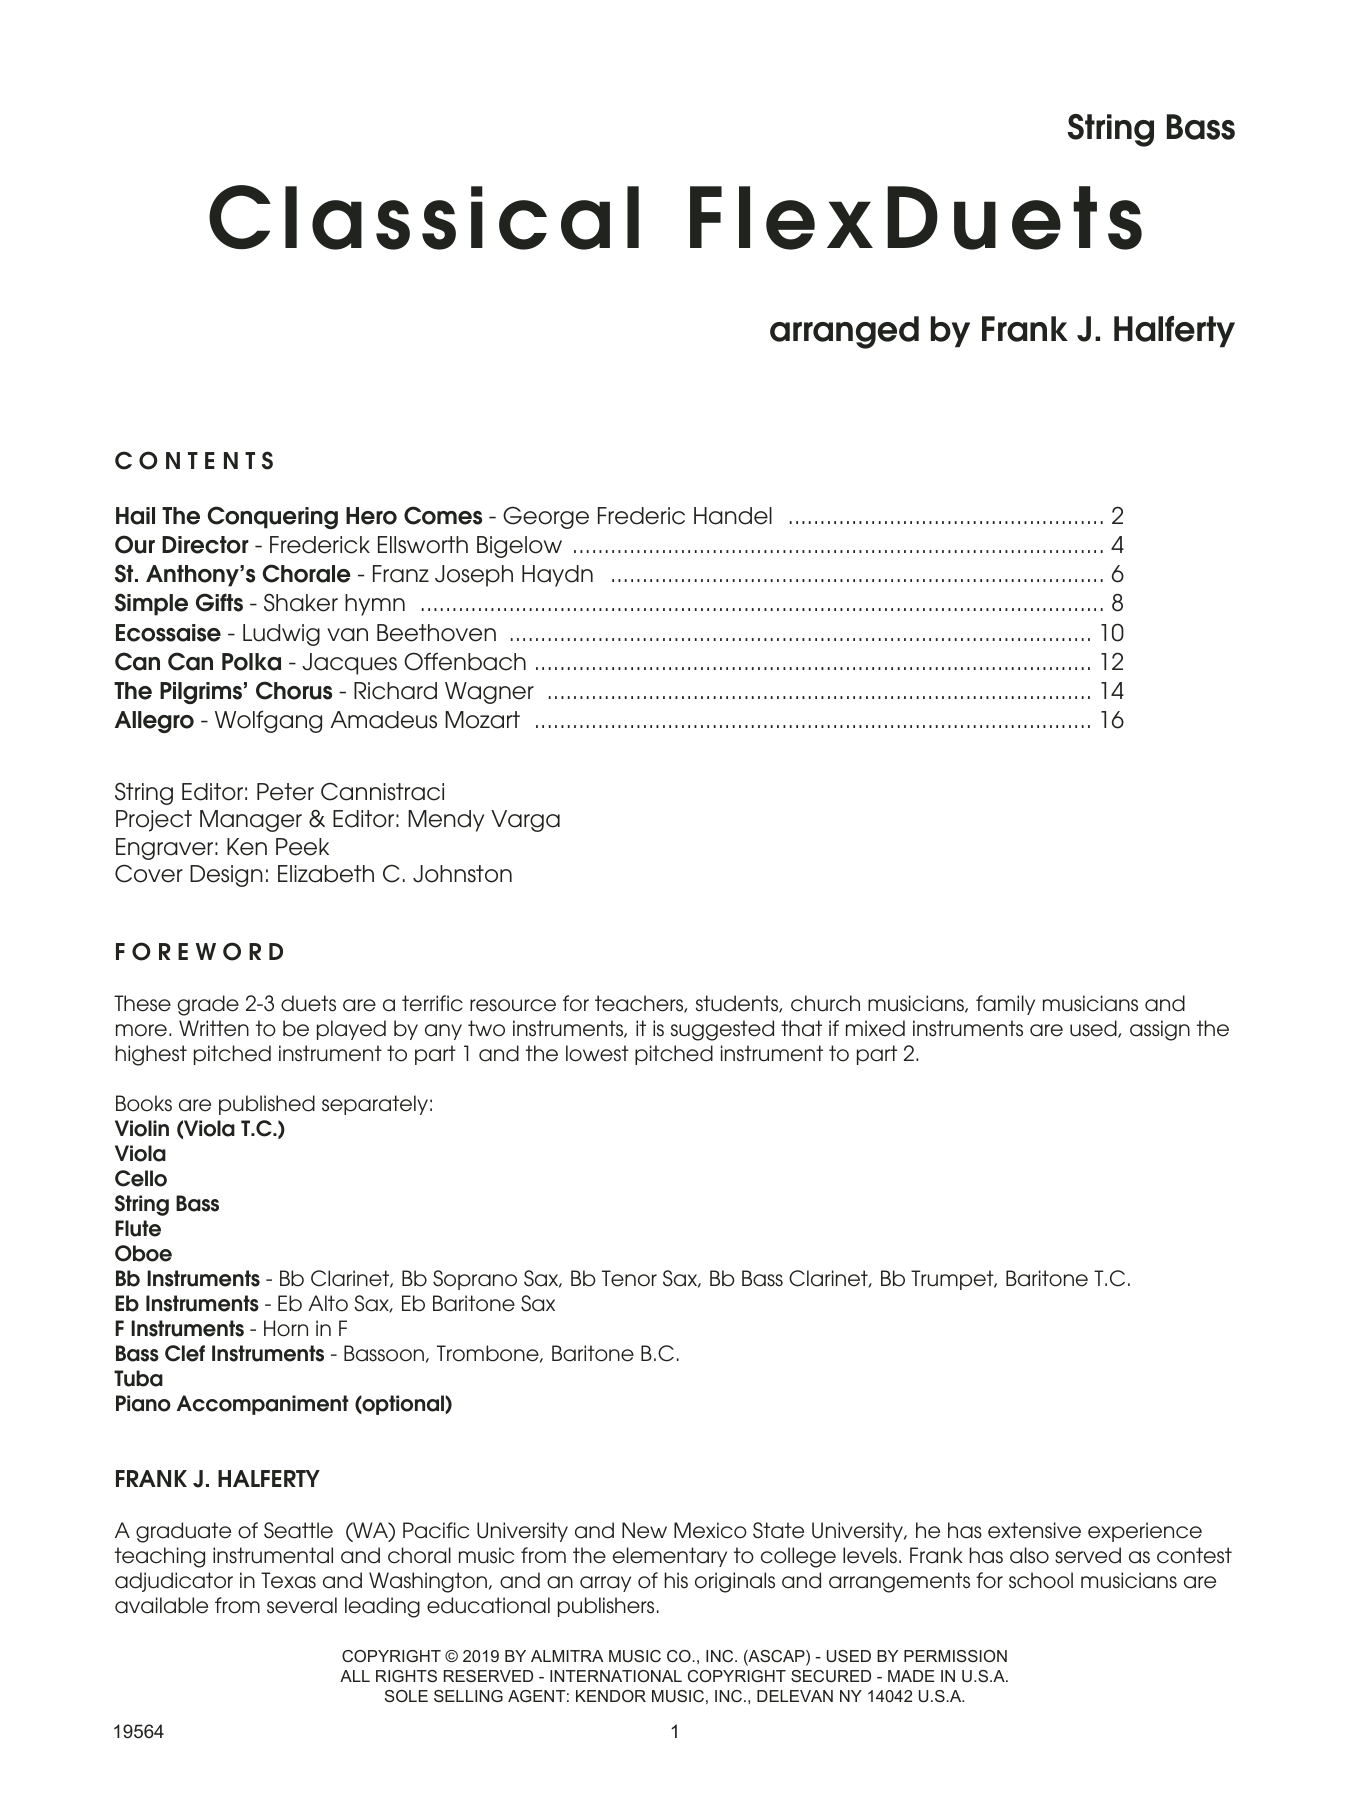 Download Frank J. Halferty Classical Flexduets - String Bass Sheet Music